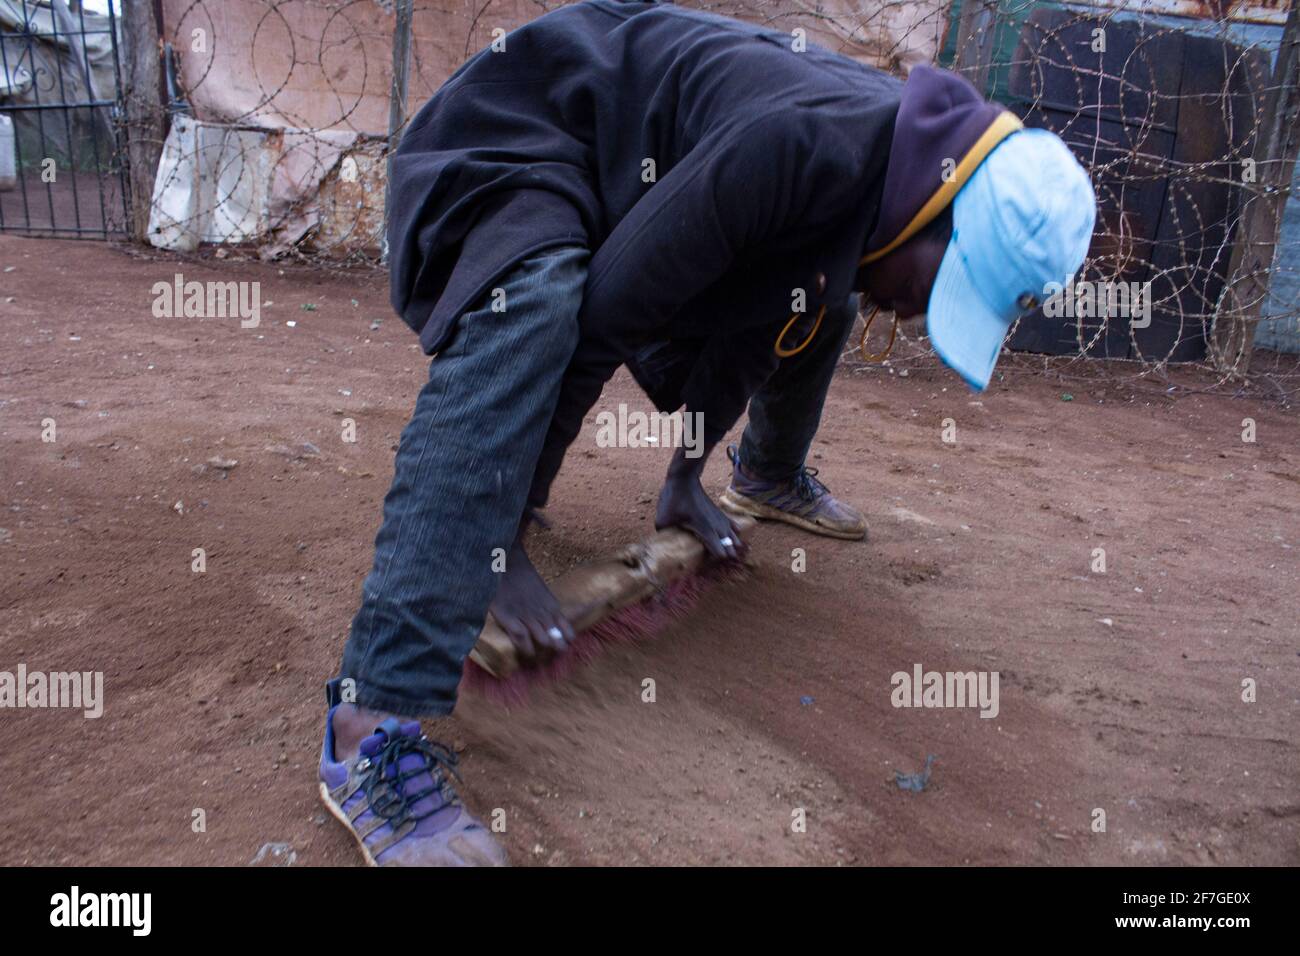 Ein informeller illegaler Goldminenarbeiter, der am 2. September 2020 Staub in den Straßen des Townships in Xawela, Carletonville in Johannesburg, Südafrika, gestaubt hat. (Foto von Manash das/Sipa USA) Quelle: SIPA USA/Alamy Live News Stockfoto